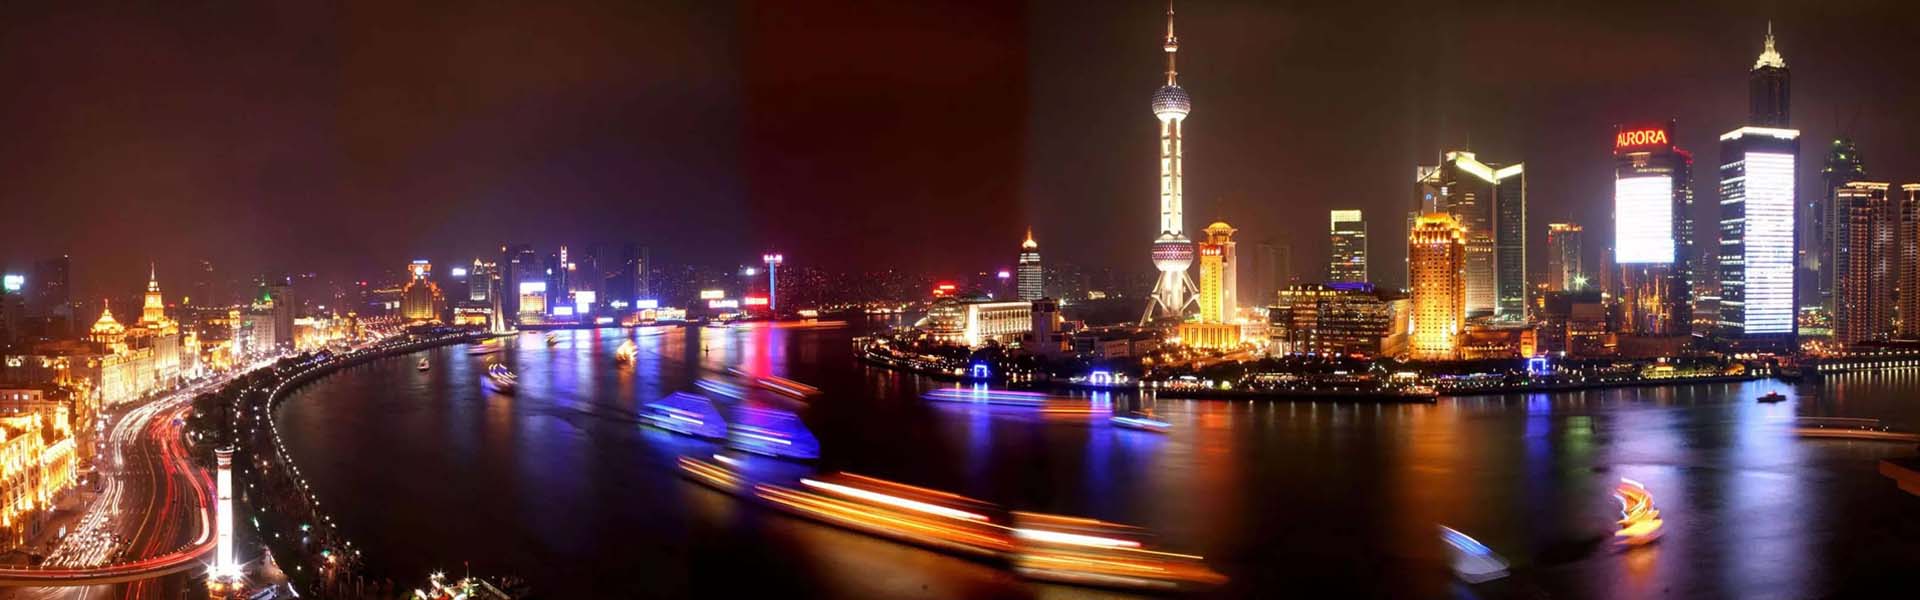 上海有什么好玩的   2017上海旅游攻略